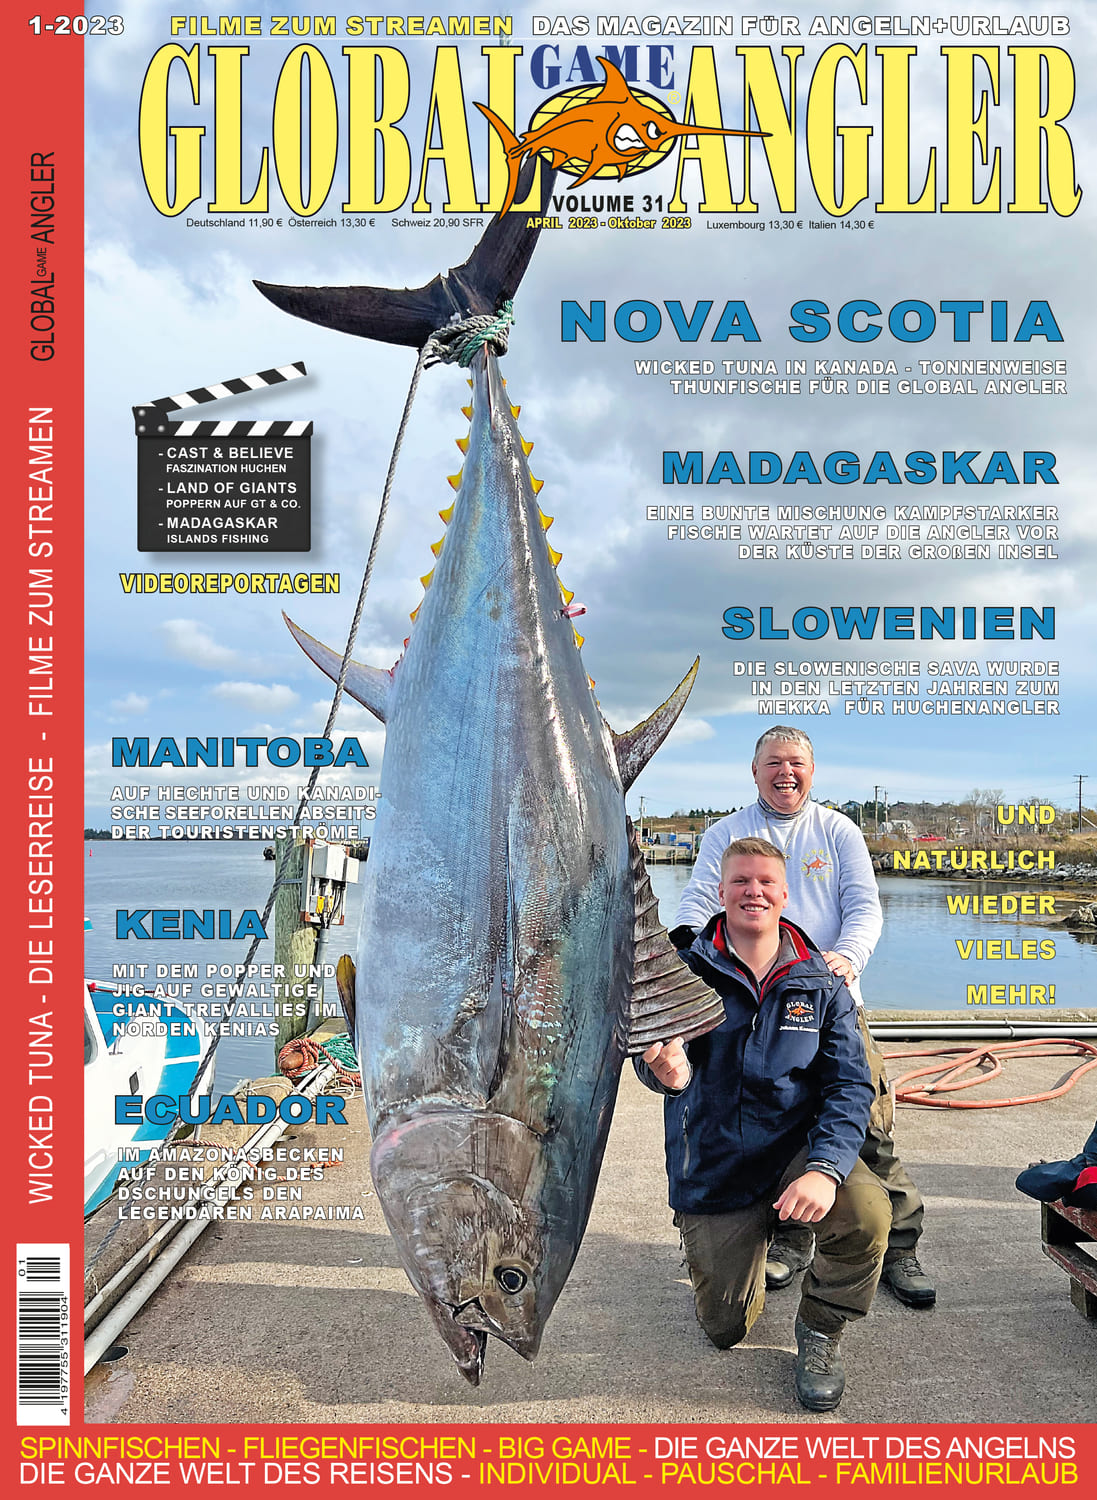 Global Angler Magazin Vol 31